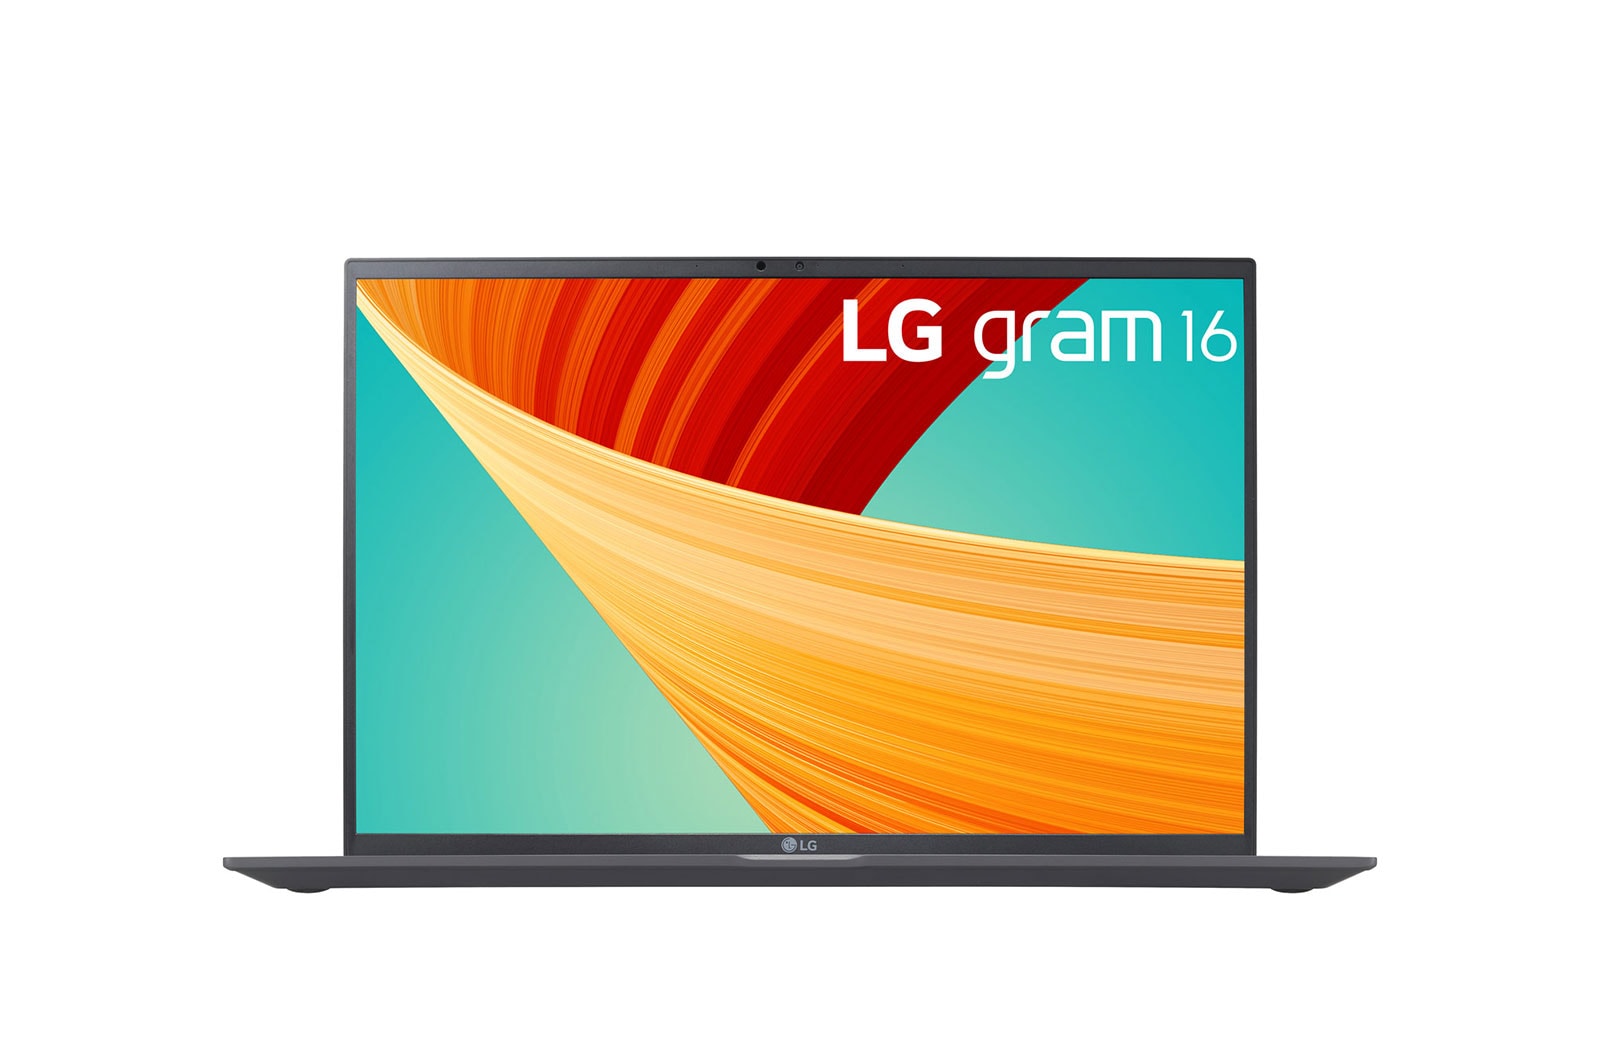 Le LG Gram 16, un ordinateur 16 pouces poids plume - La Voix du Nord